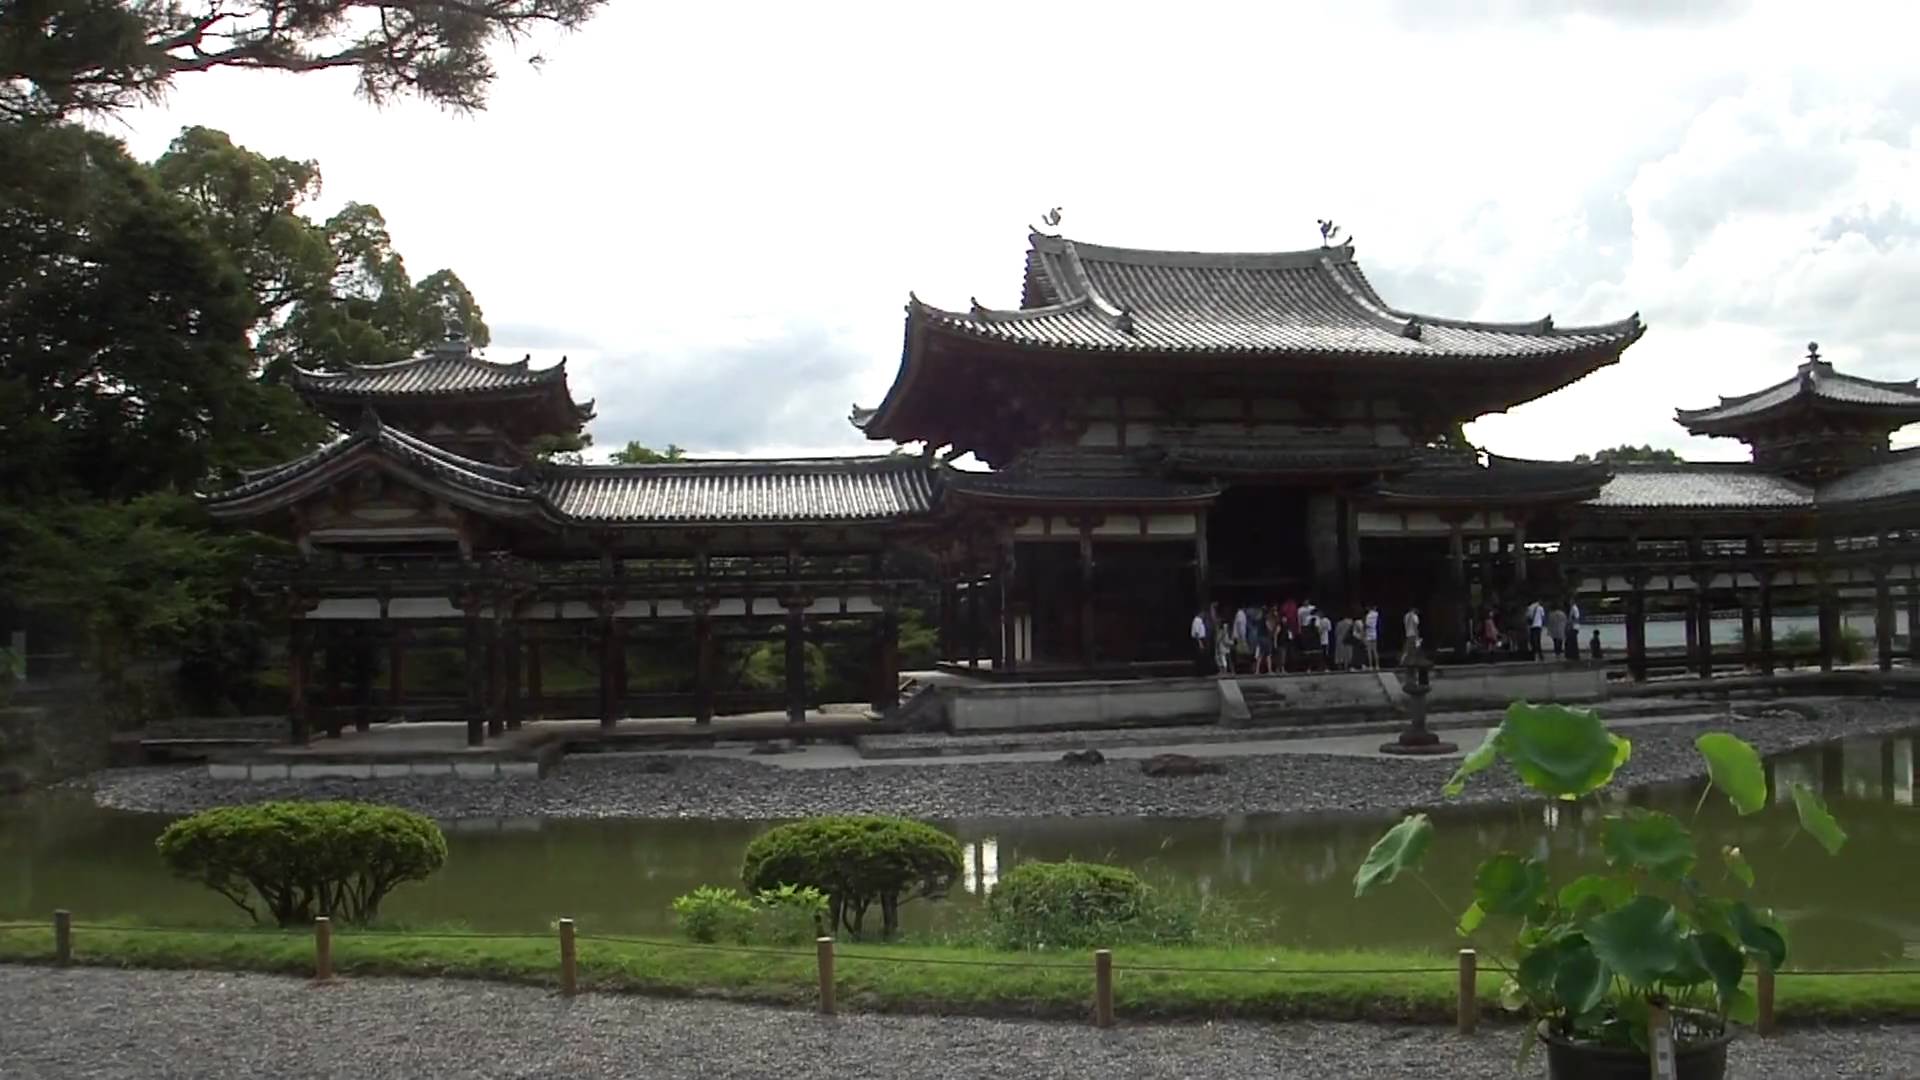 京都 宇治にある国宝 平等院鳳凰堂へ行ってきました。